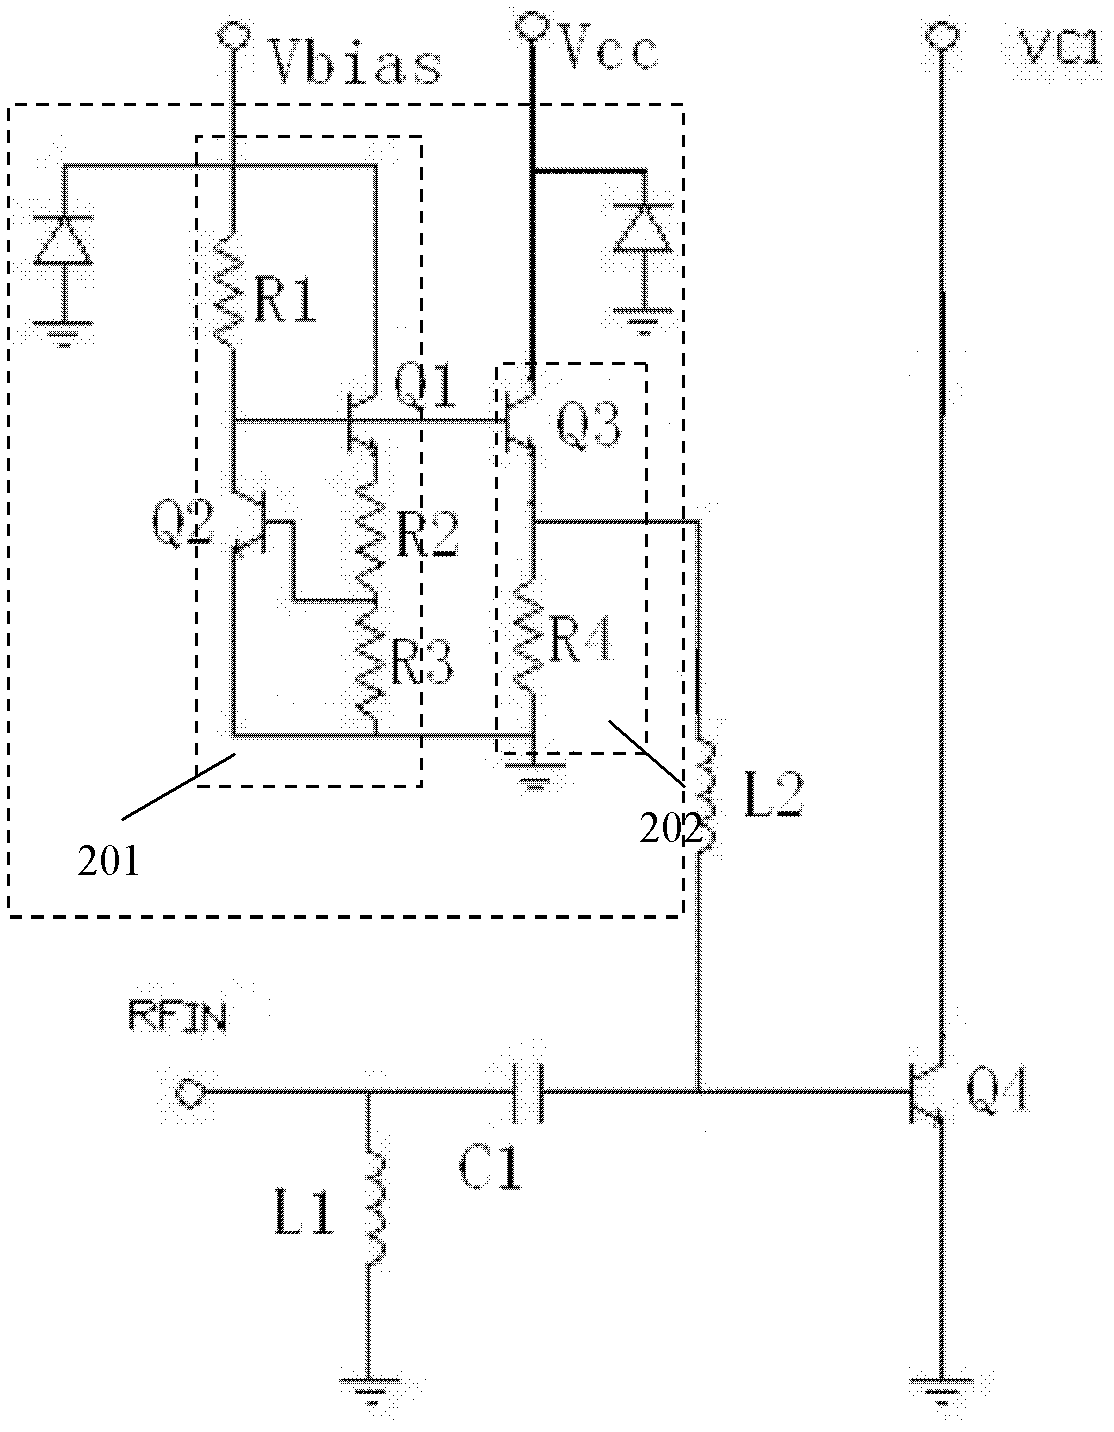 Biasing circuit of power amplifier